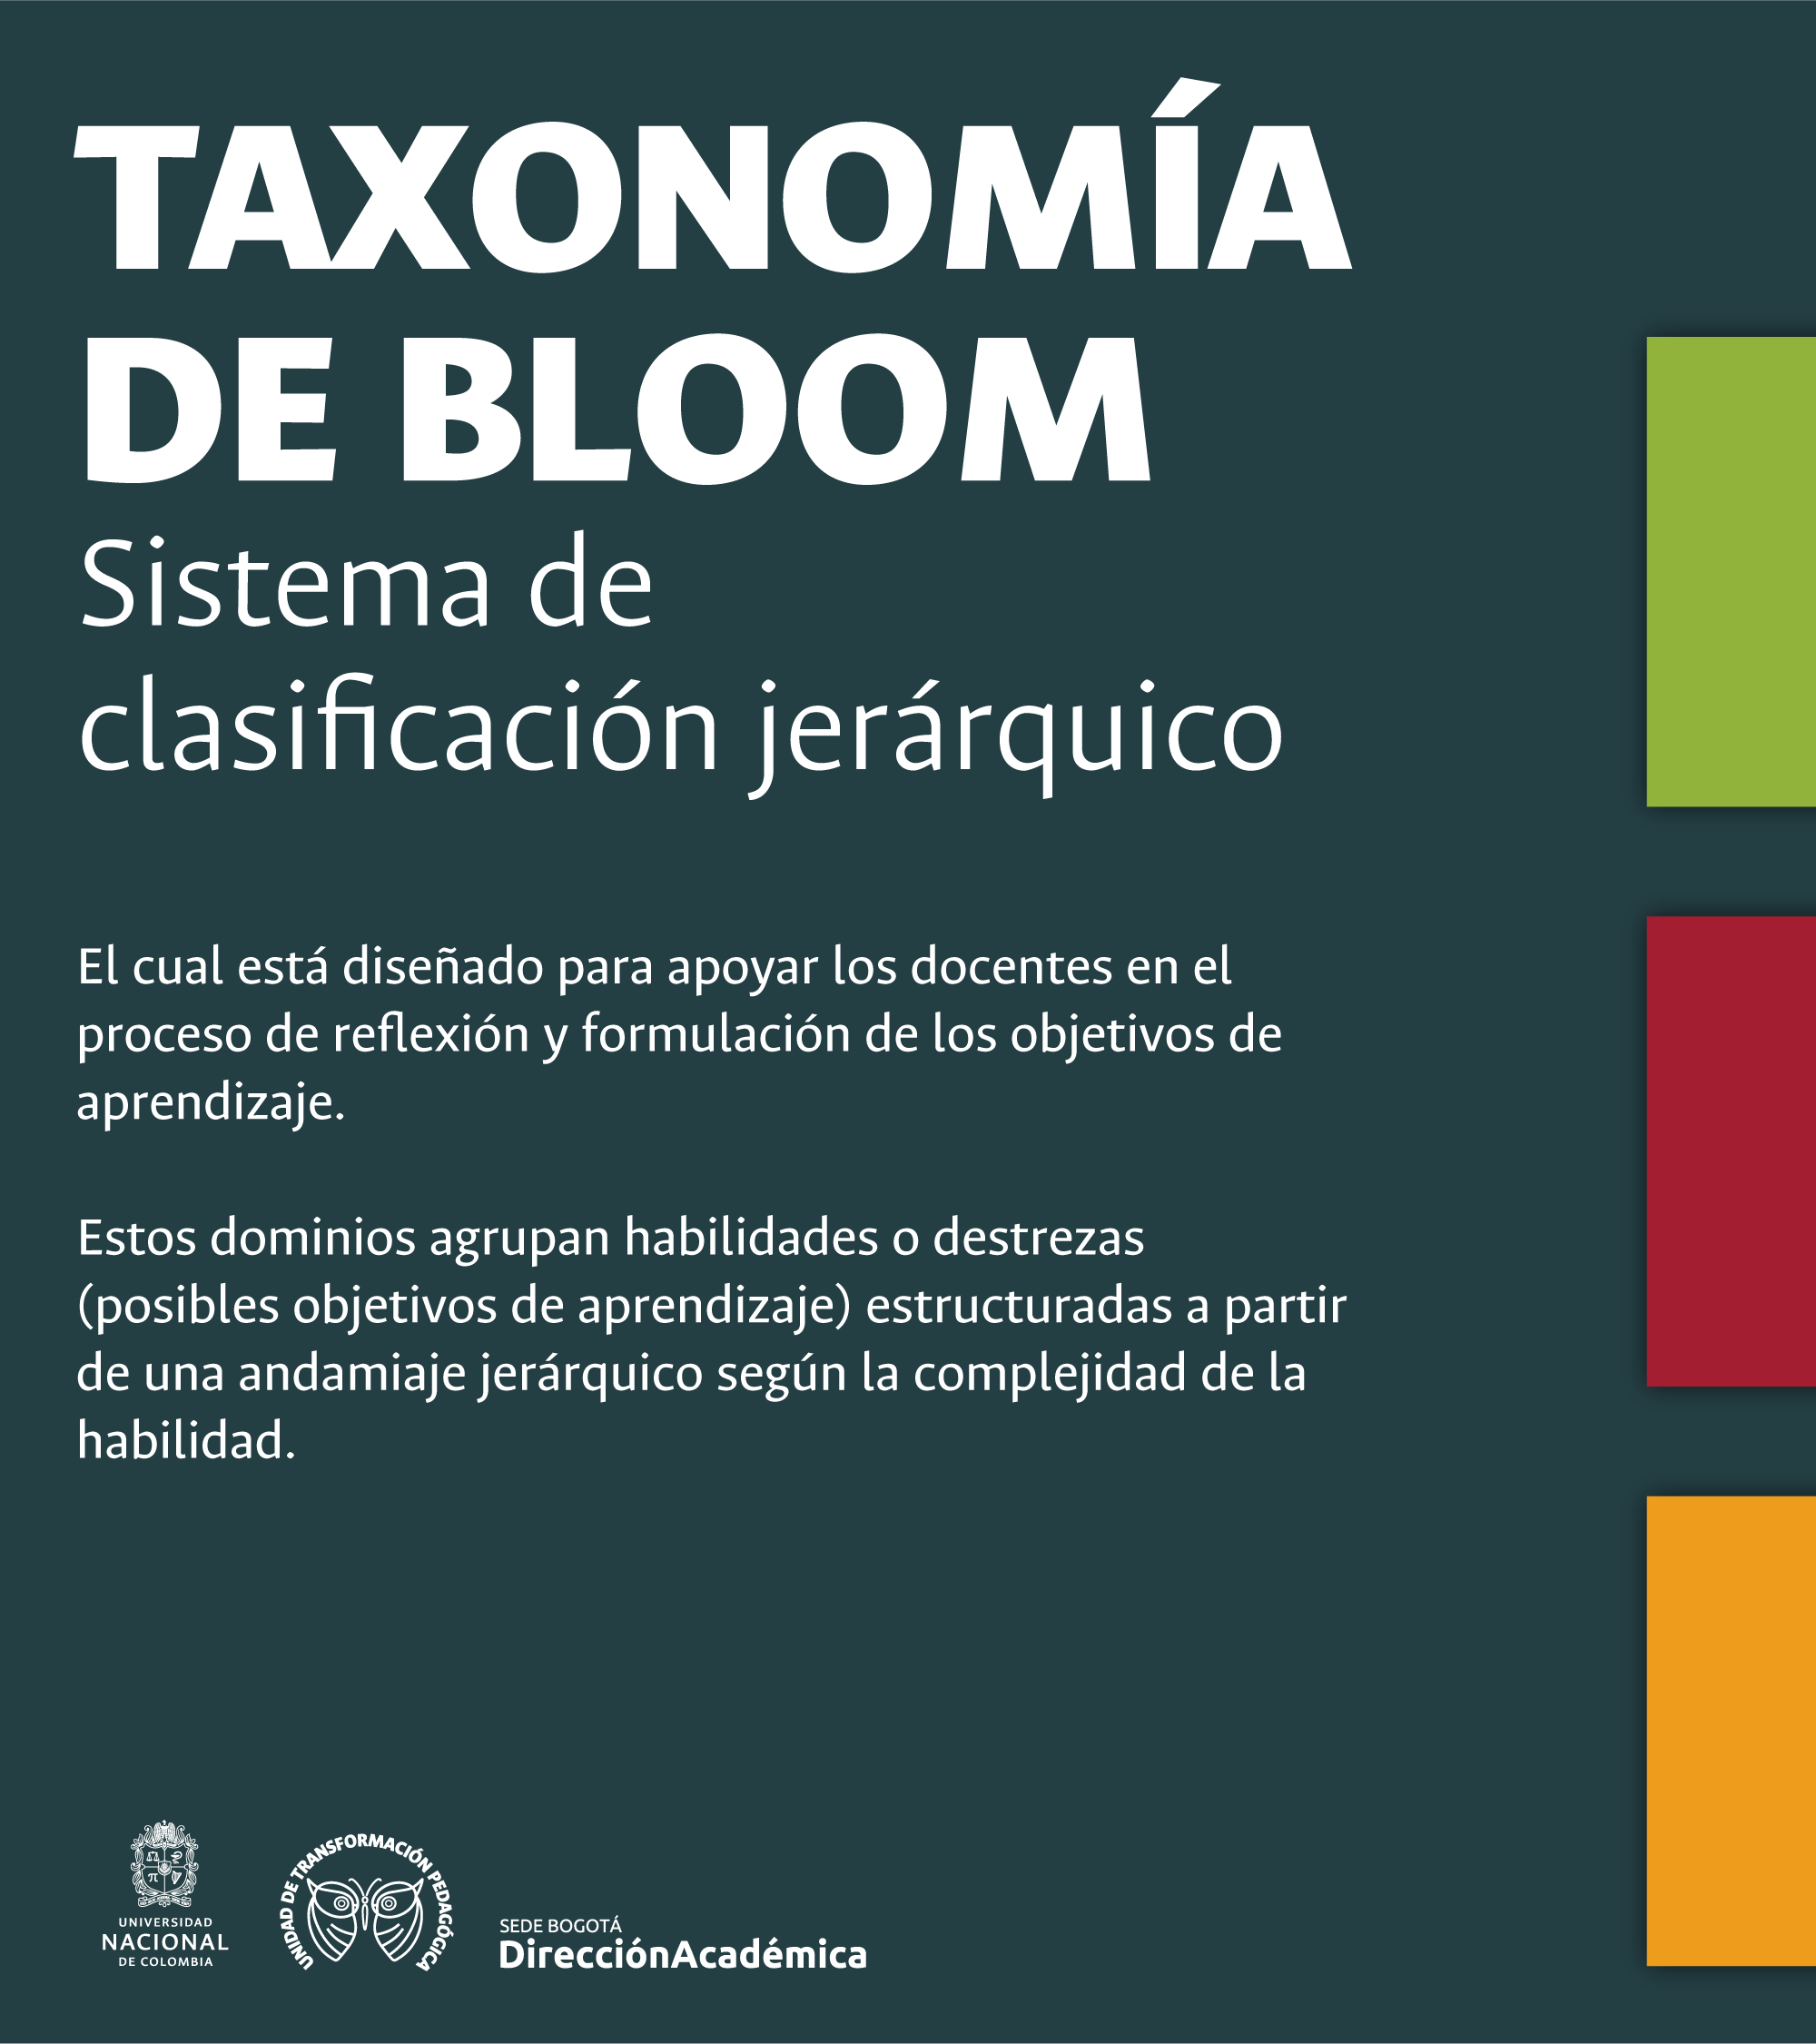 Taxonomia-Bloom-1